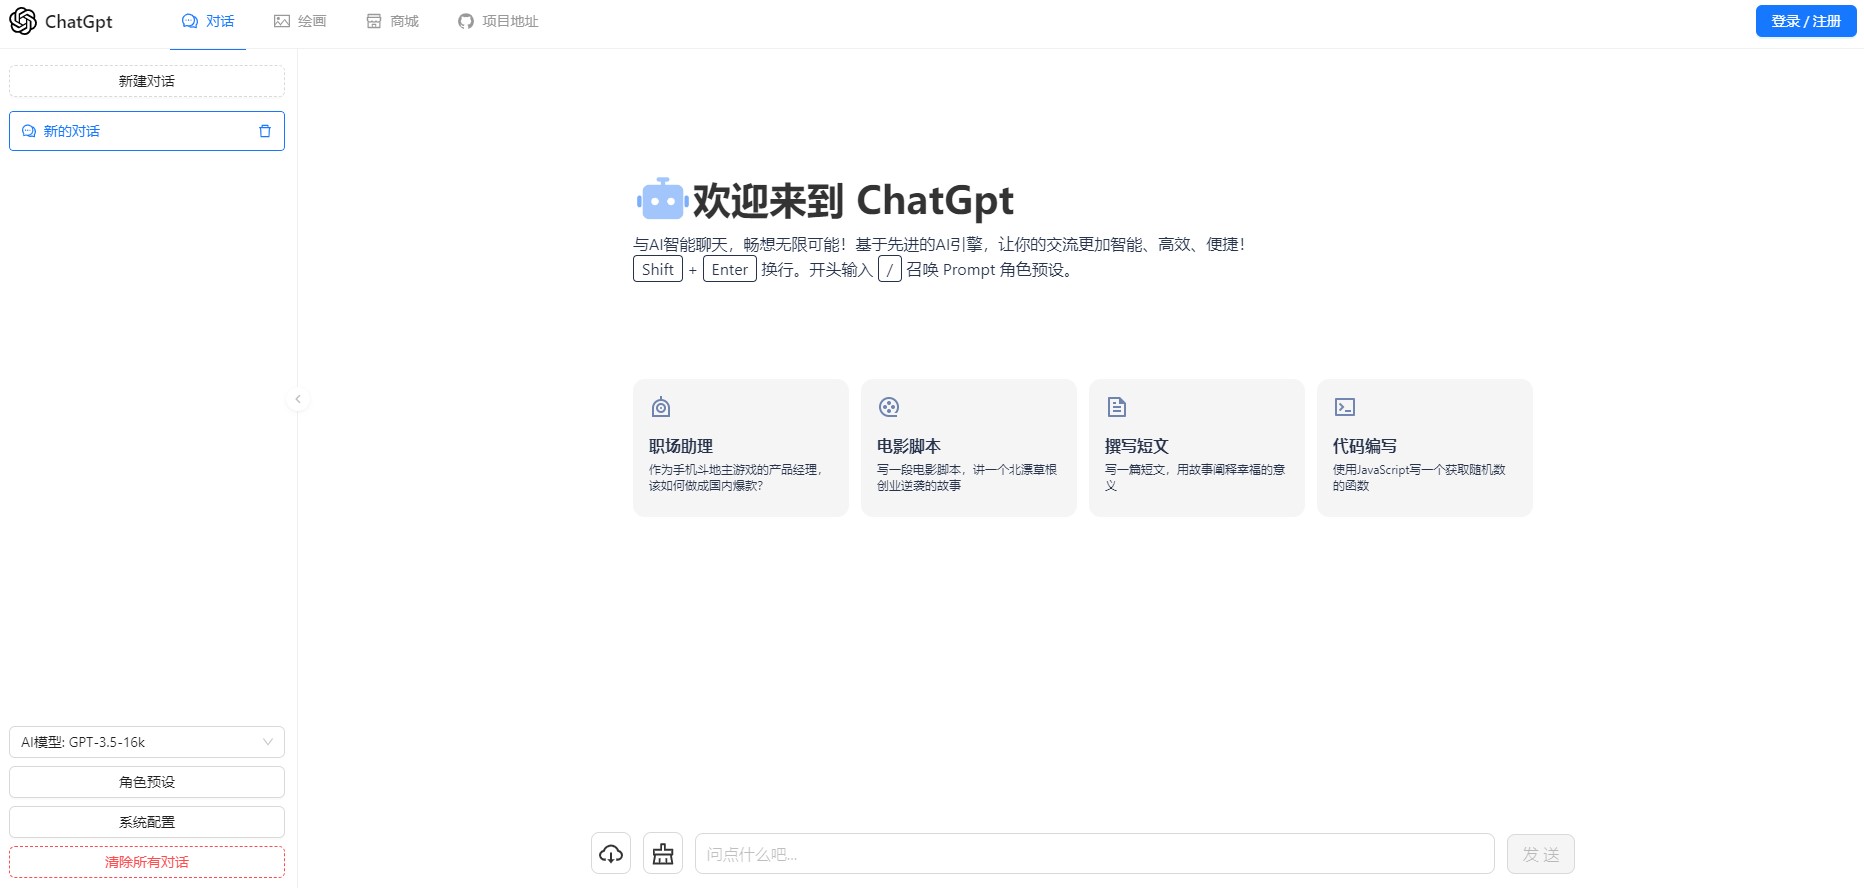 一款可商业化的ChatGpt Web源码-久爱副业网